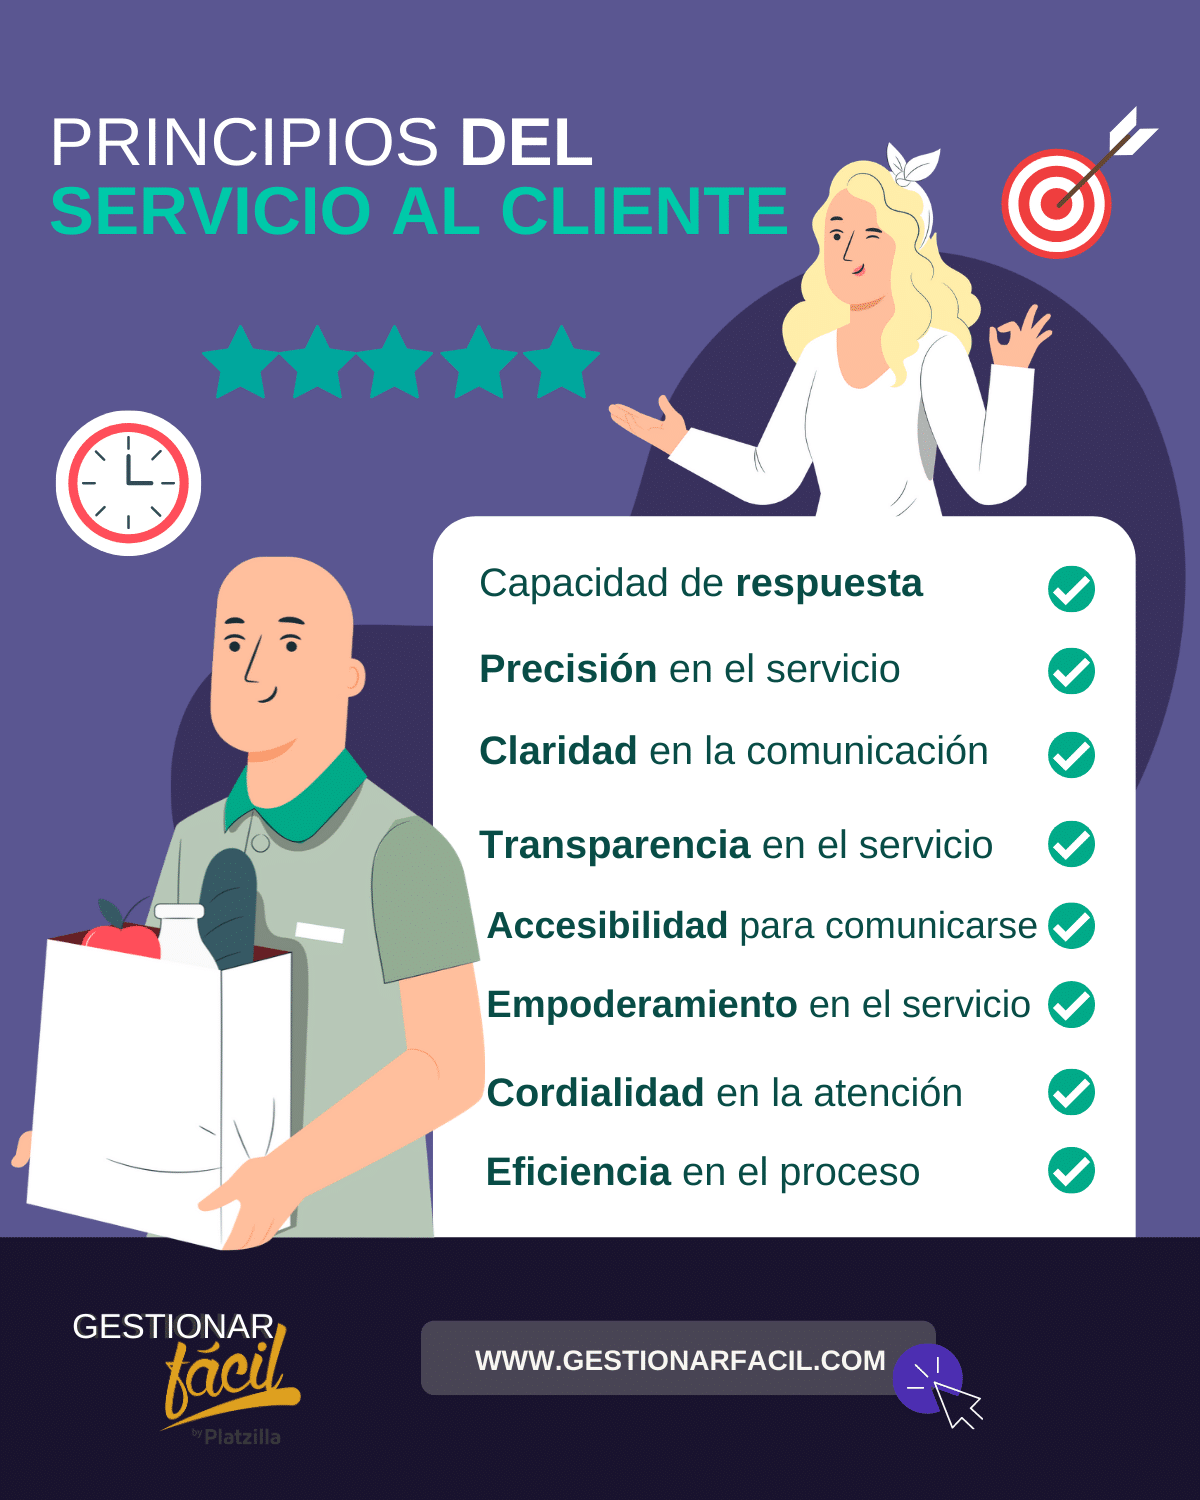 Principios del servicio al cliente